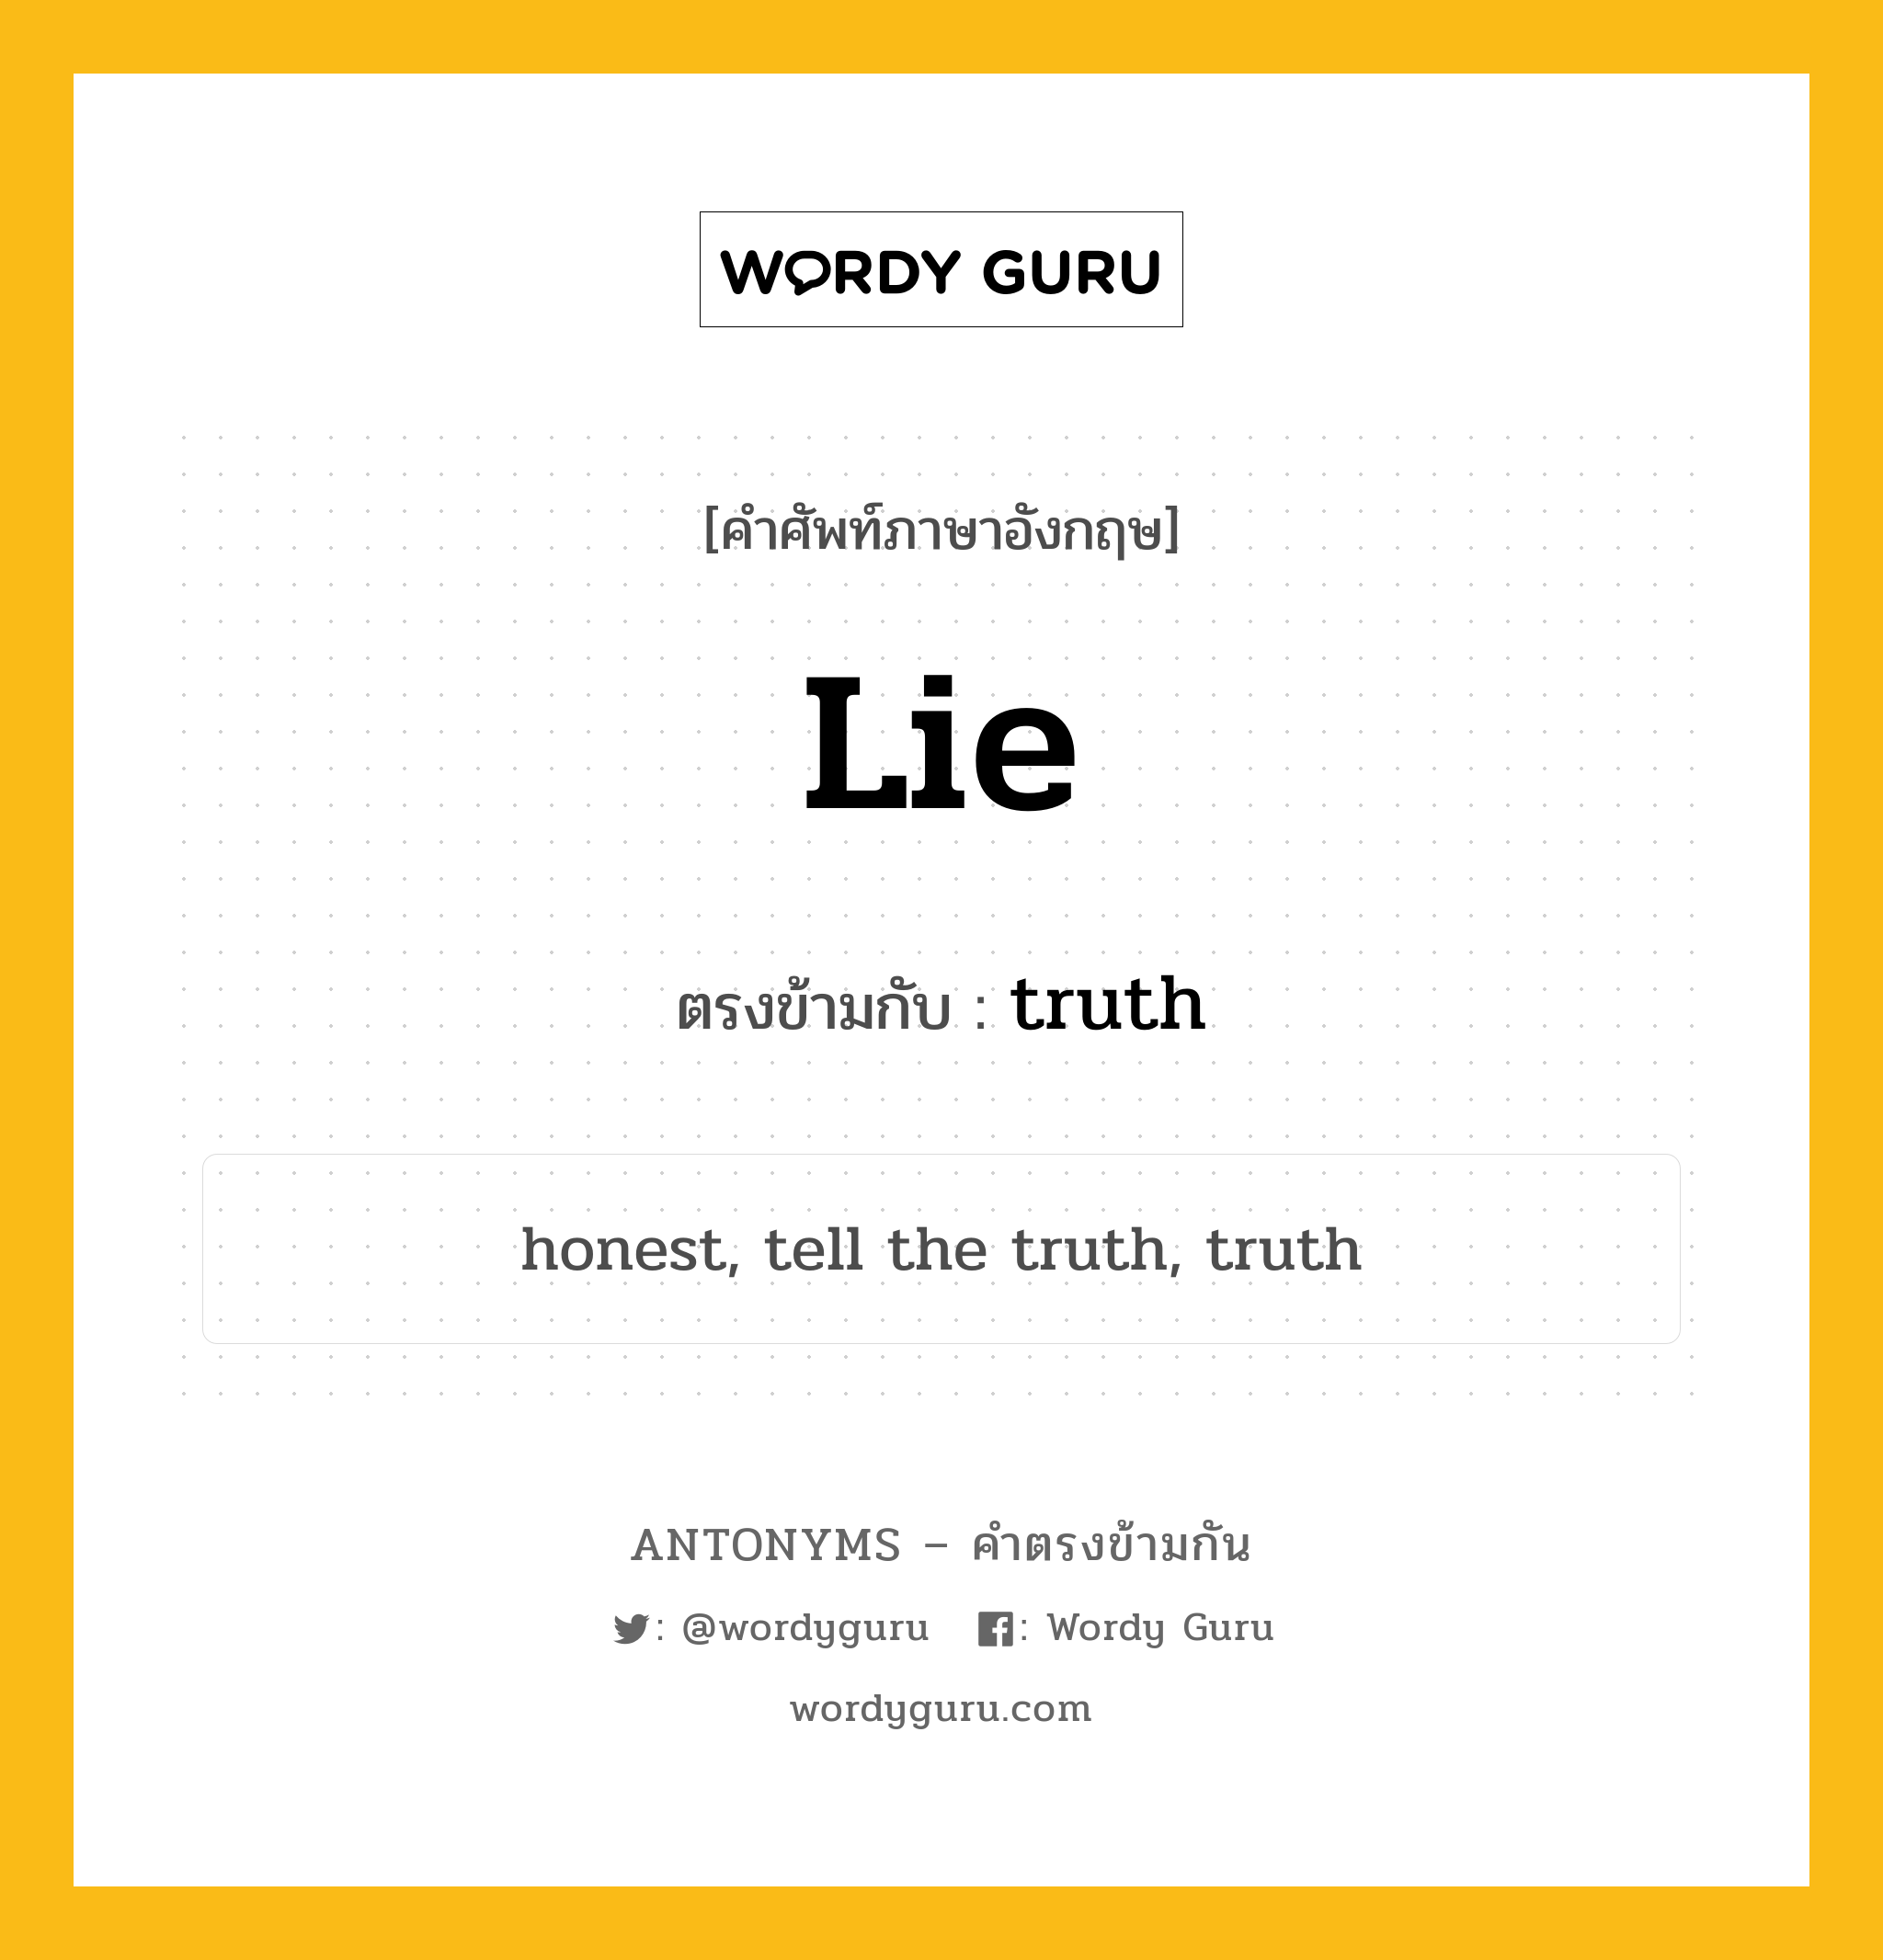 lie เป็นคำตรงข้ามกับคำไหนบ้าง?, คำศัพท์ภาษาอังกฤษ lie ตรงข้ามกับ truth หมวด truth